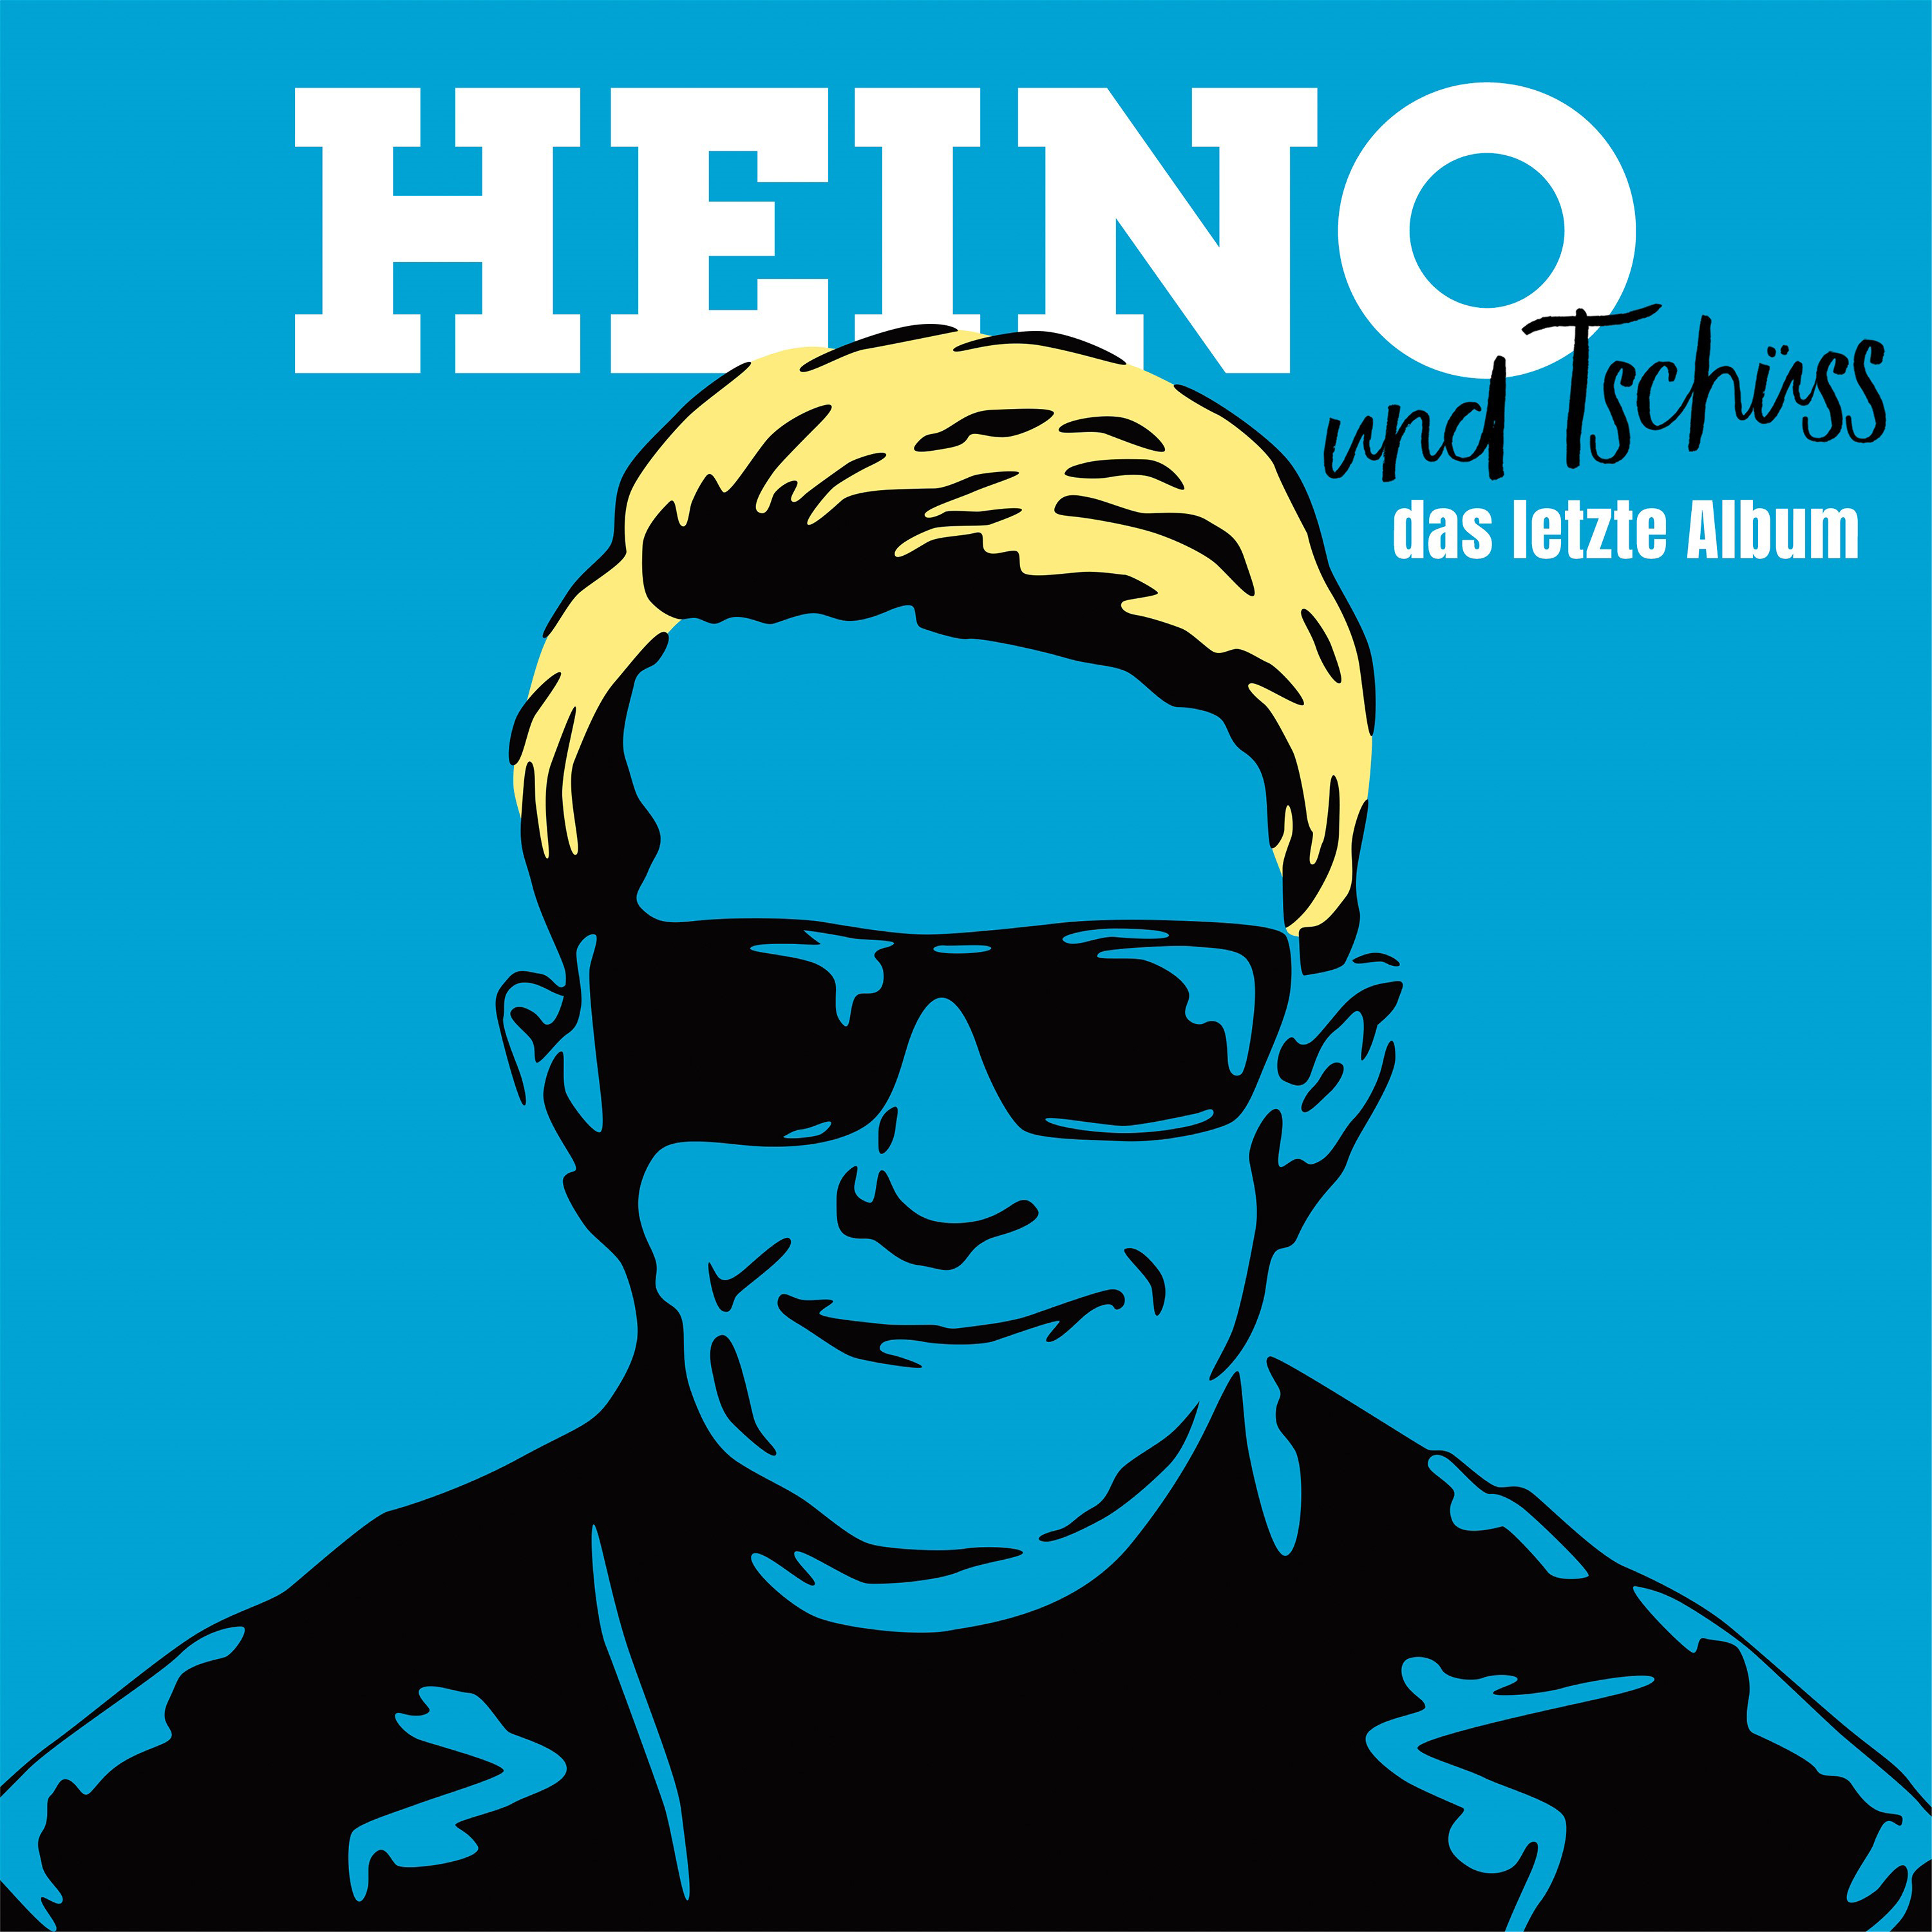 Heino - ...und Tschüss (Das - letzte (CD) Album)